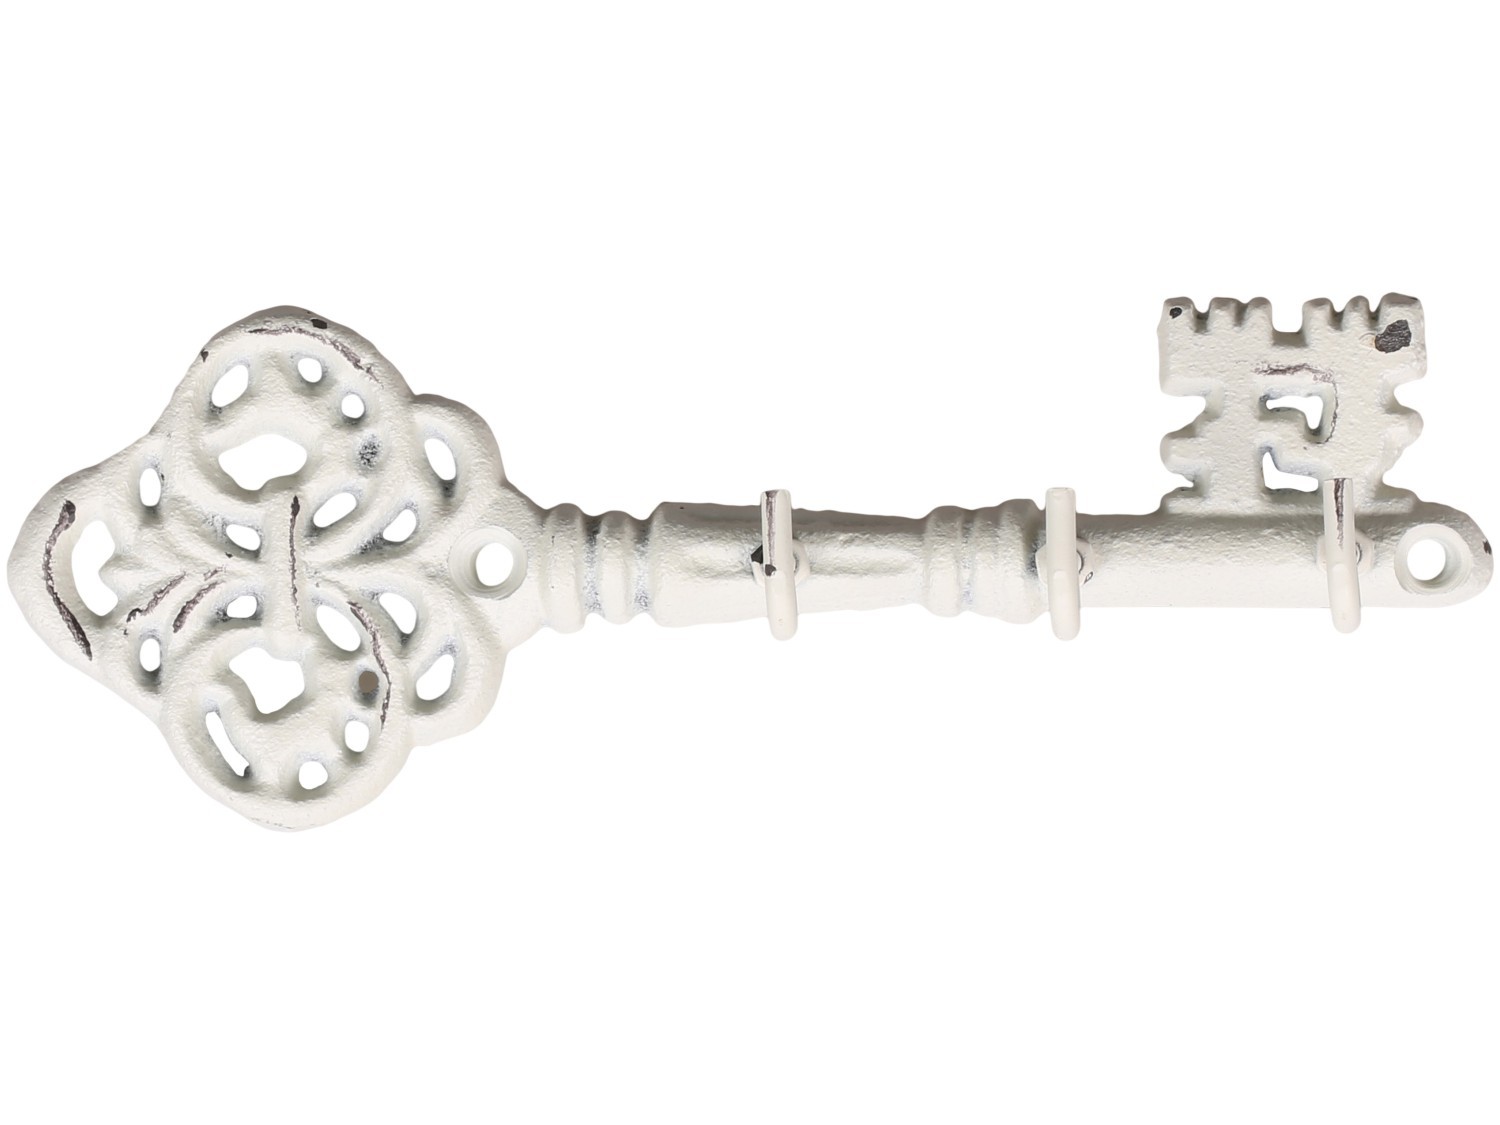 Krémový antik nástěnný věšák ve tvaru klíče se 3-mi háčky - 19*4*6,5 cm 64057519 (64575-19)